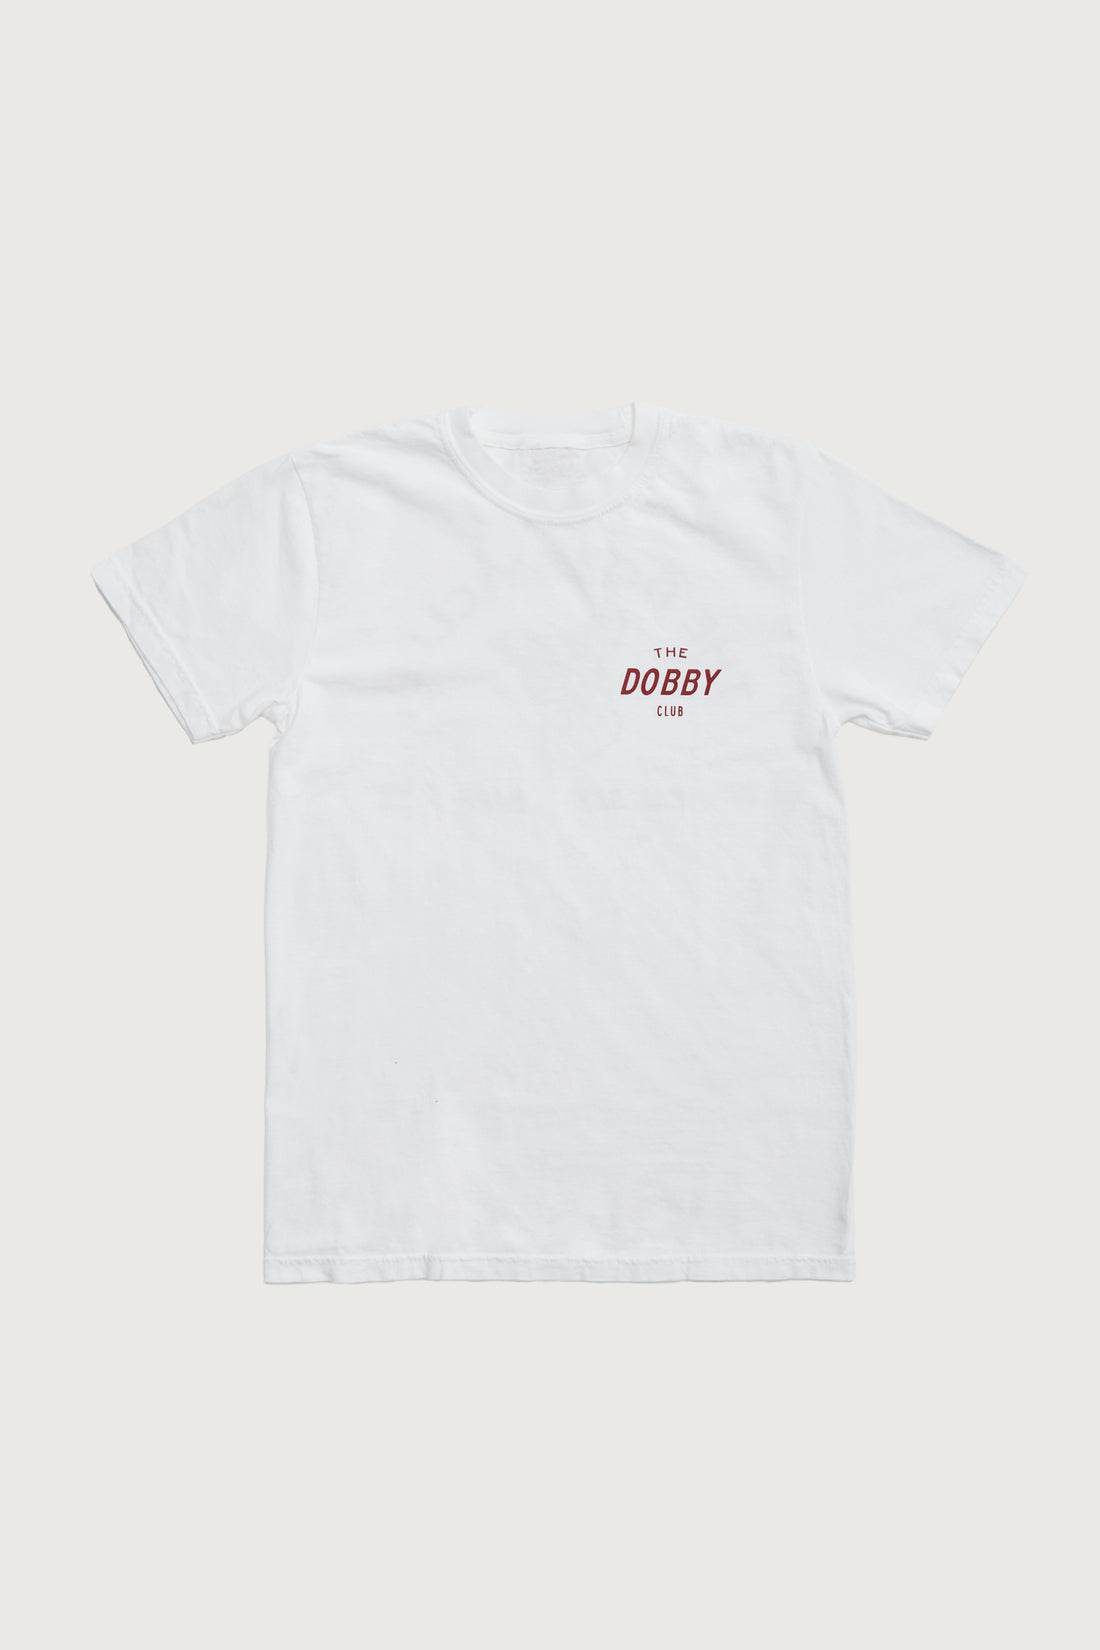 Dobby Club T-Shirt + White - Little Puffy